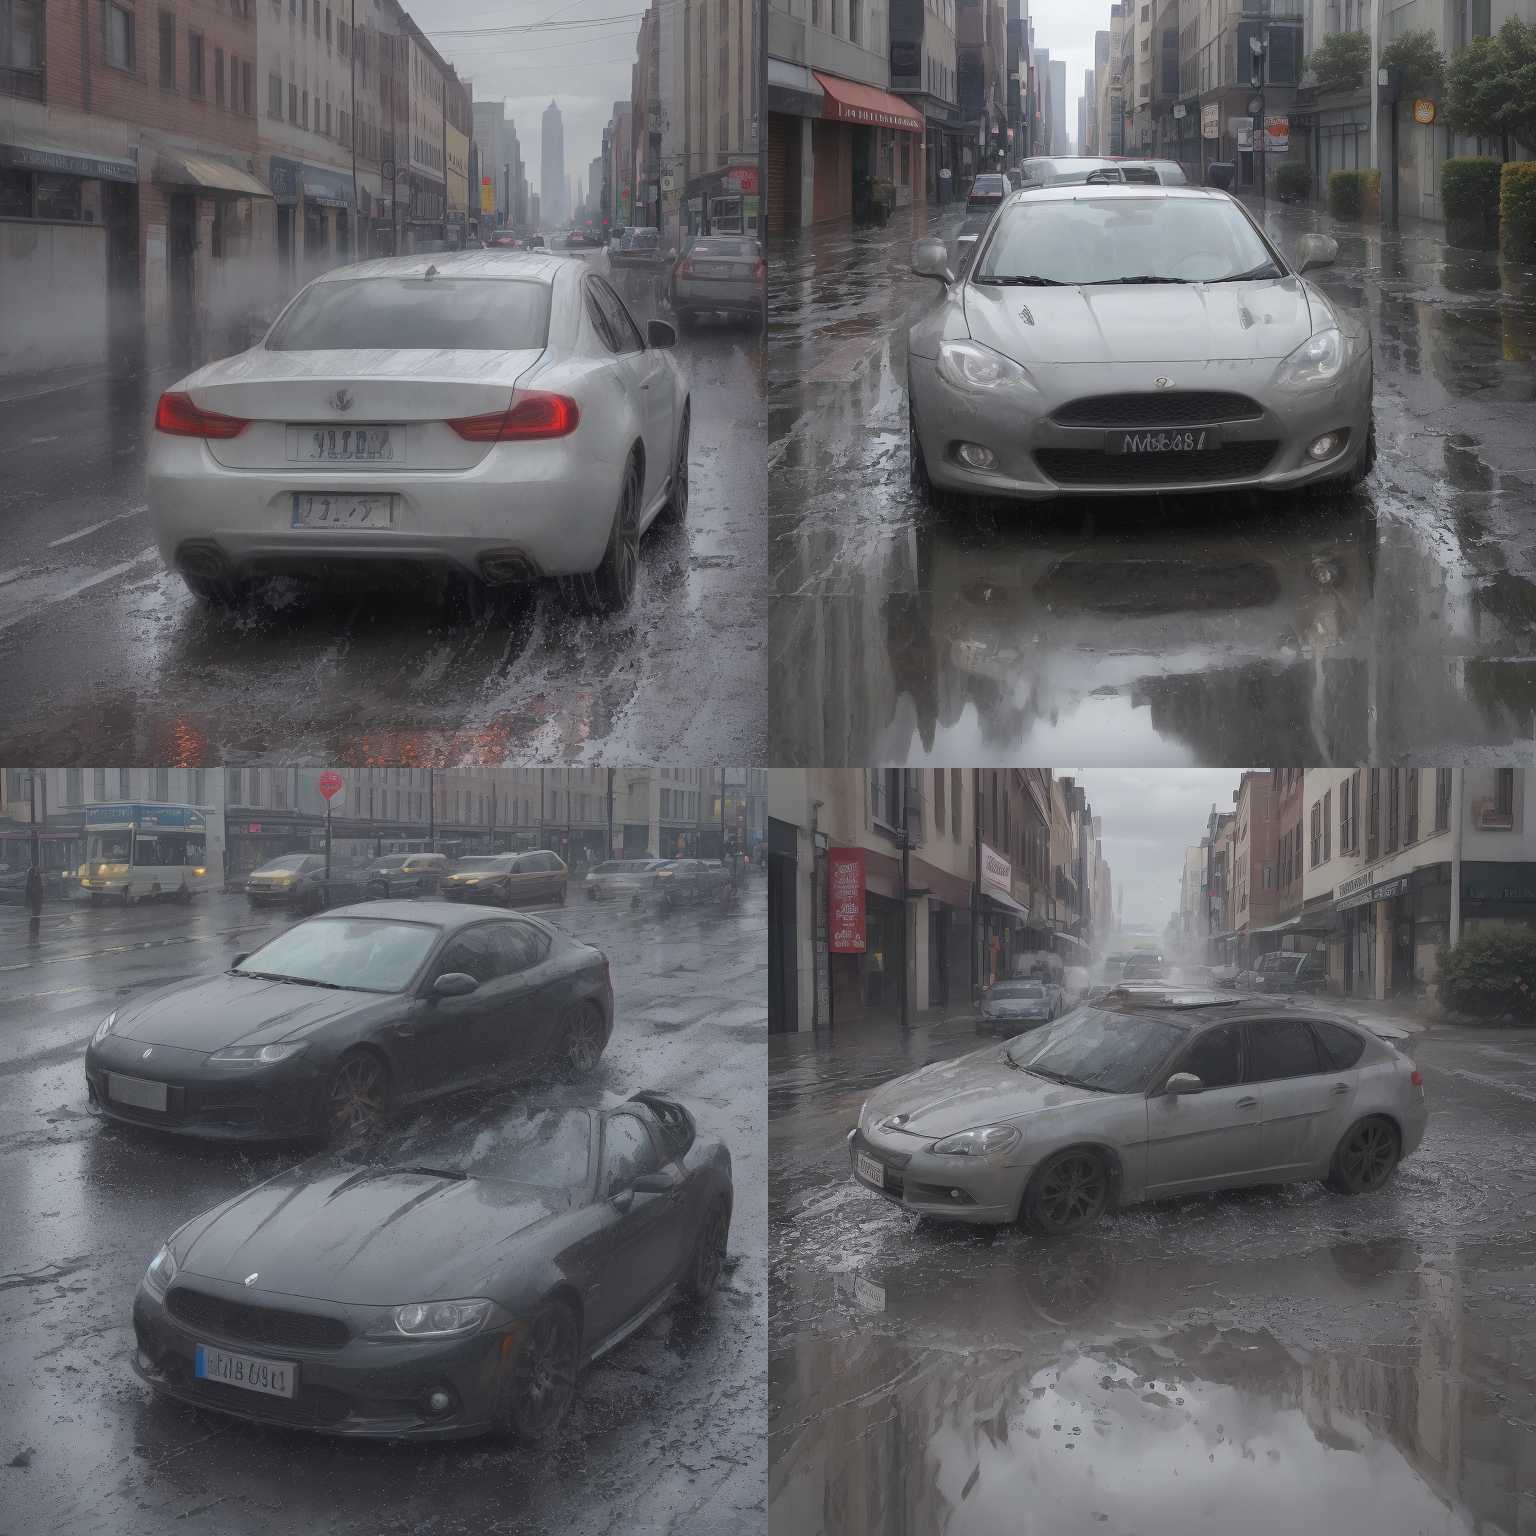 A car speeding through a puddle